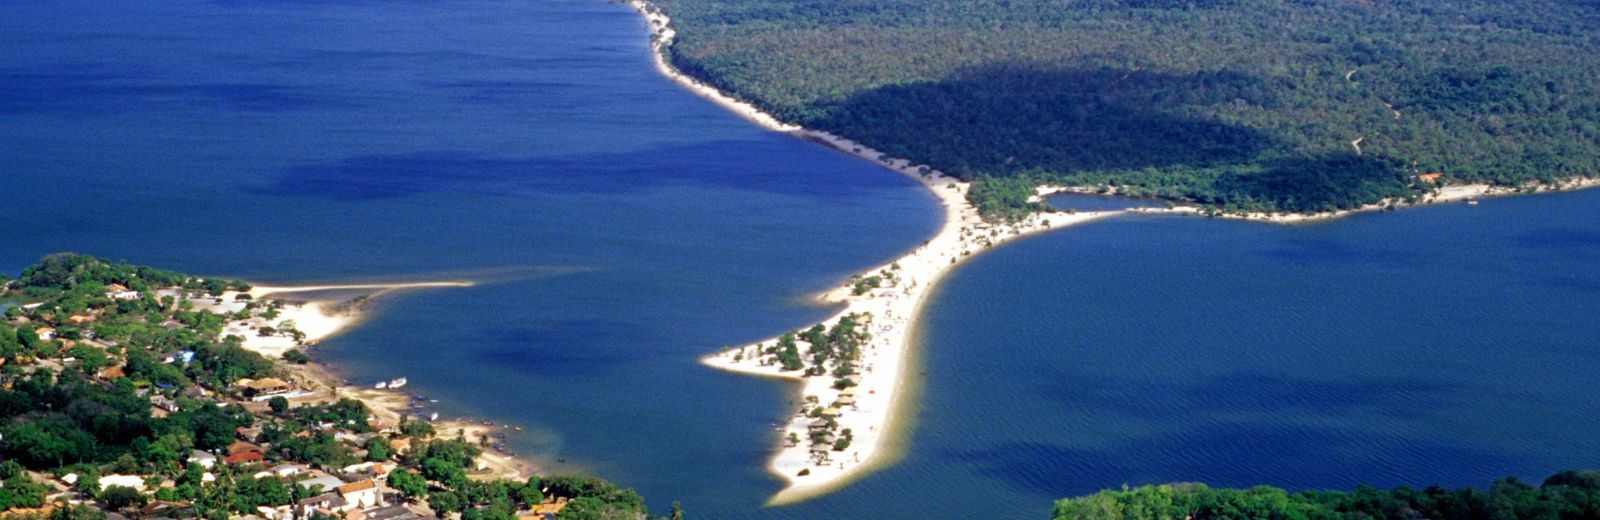 imagem aérea de ilhota em meio a rio de alter do chão, amazônia